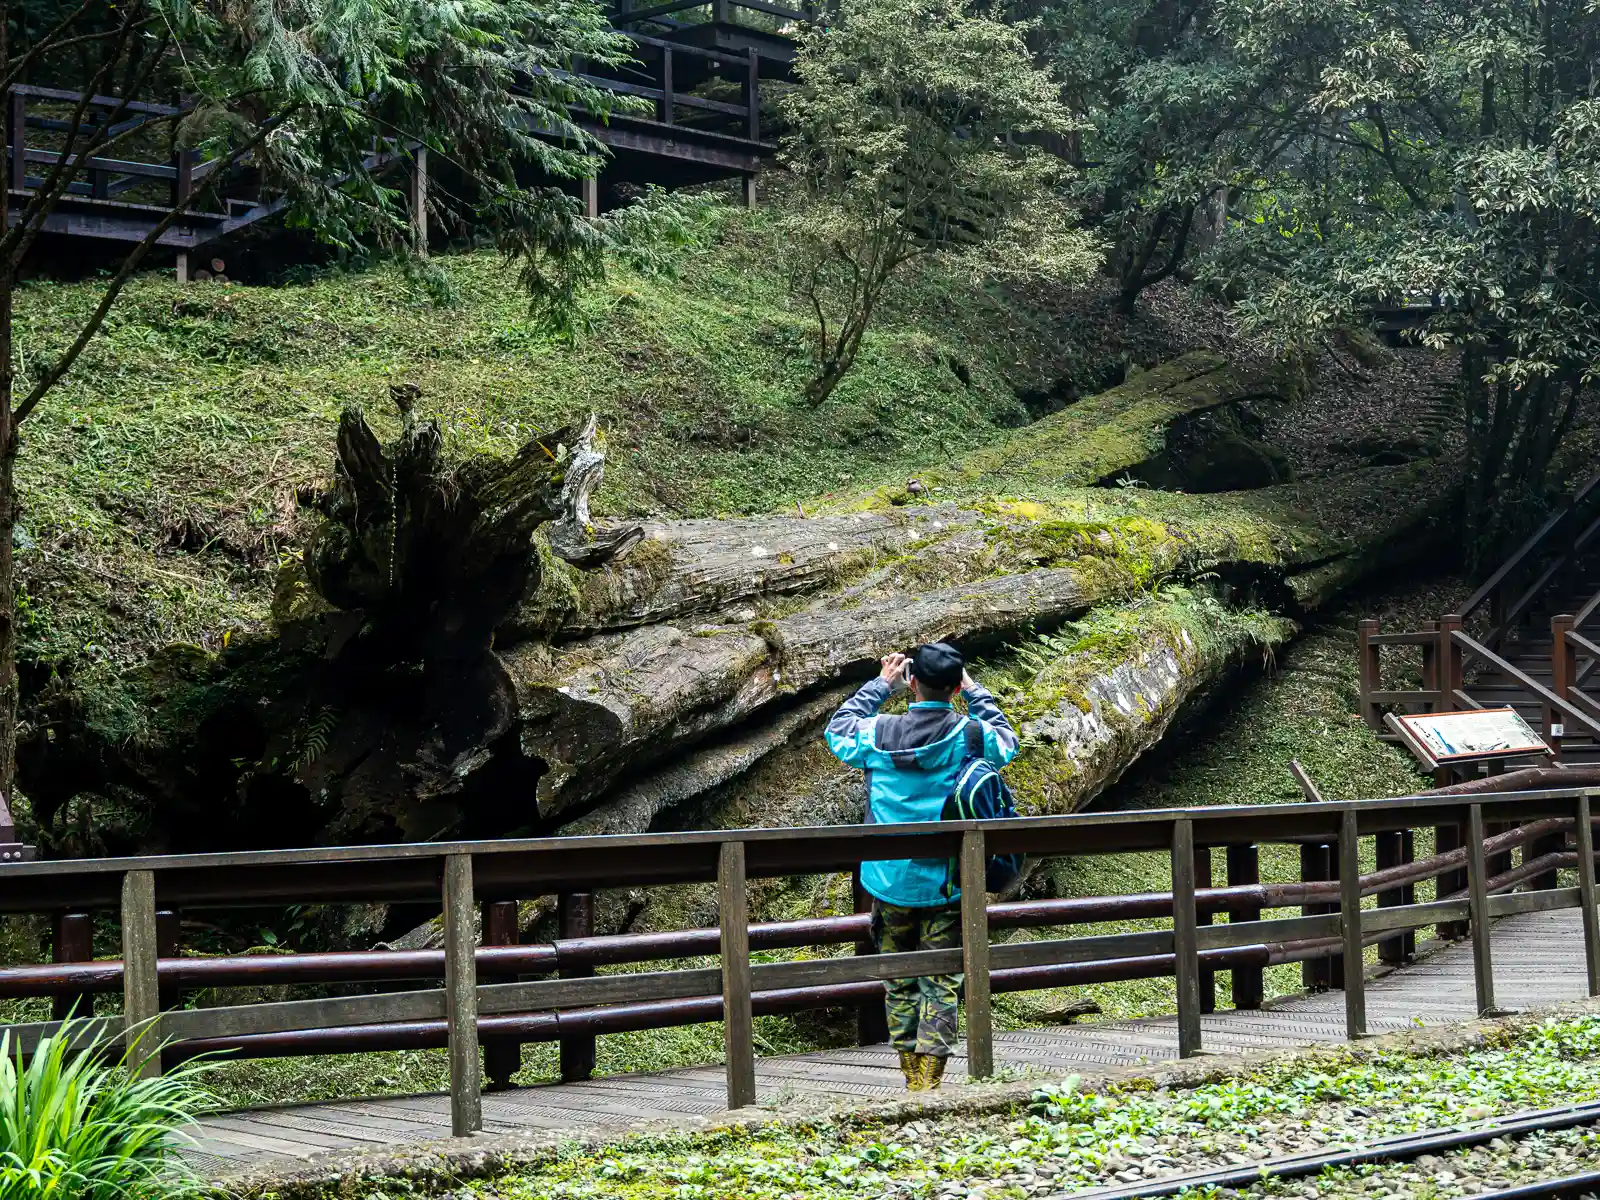 A tourist takes a photo of a giant fallen tree along a walking path.